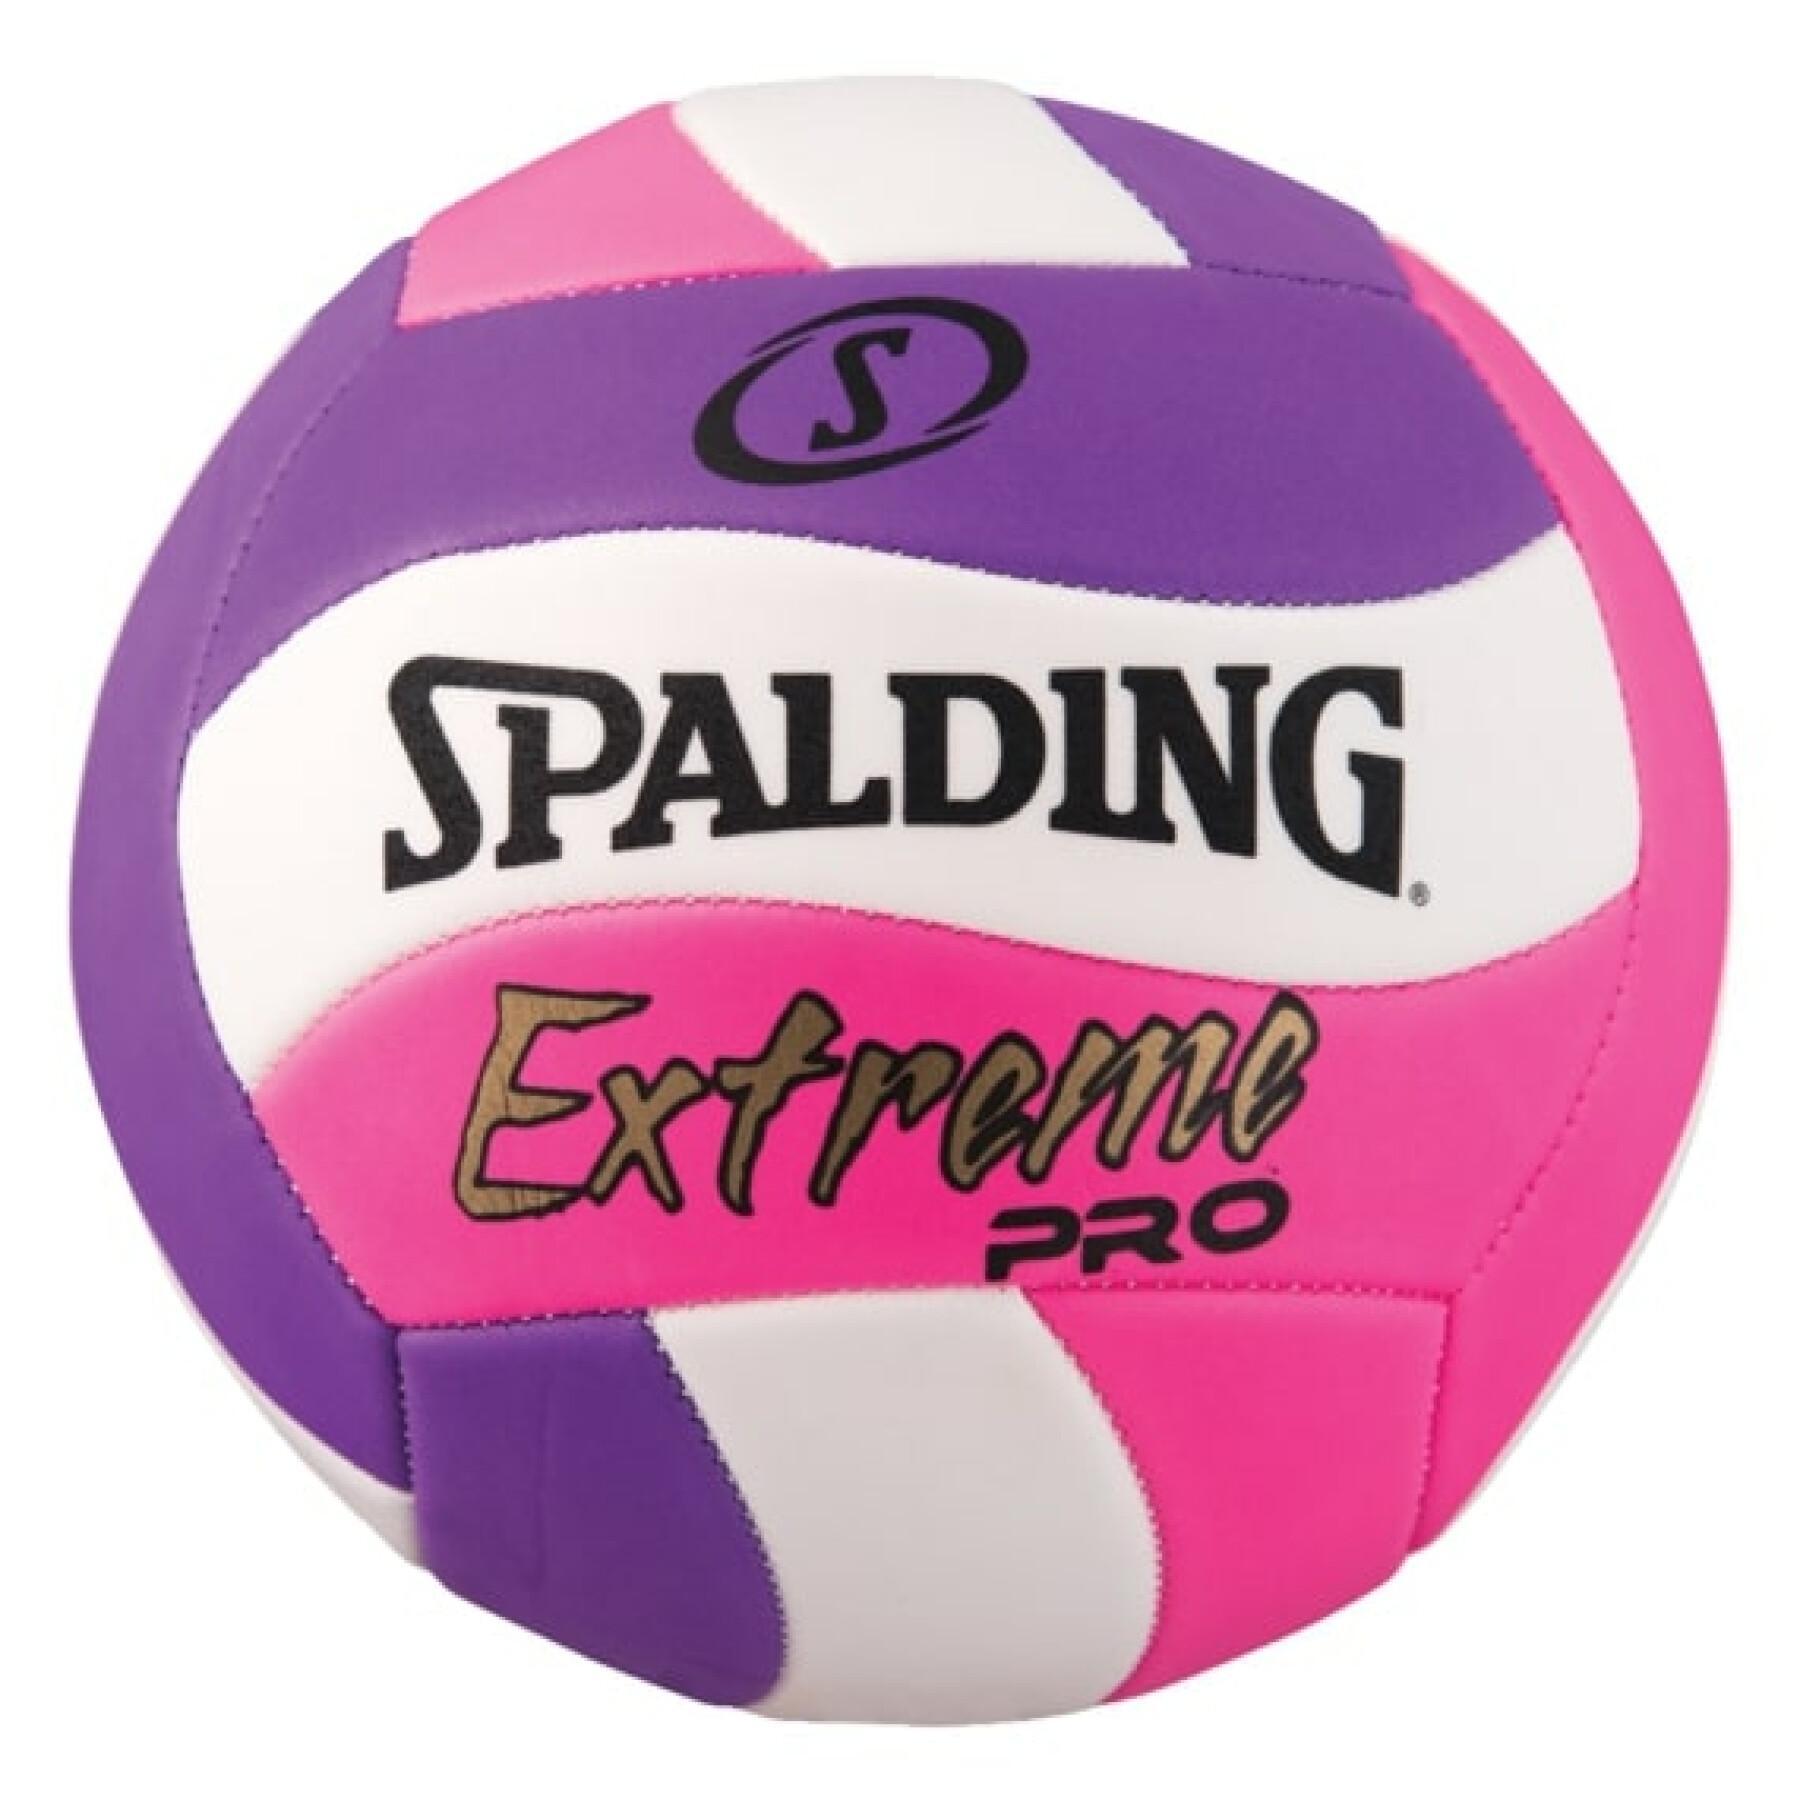 Pallone da pallavolo Spalding Extreme Pro